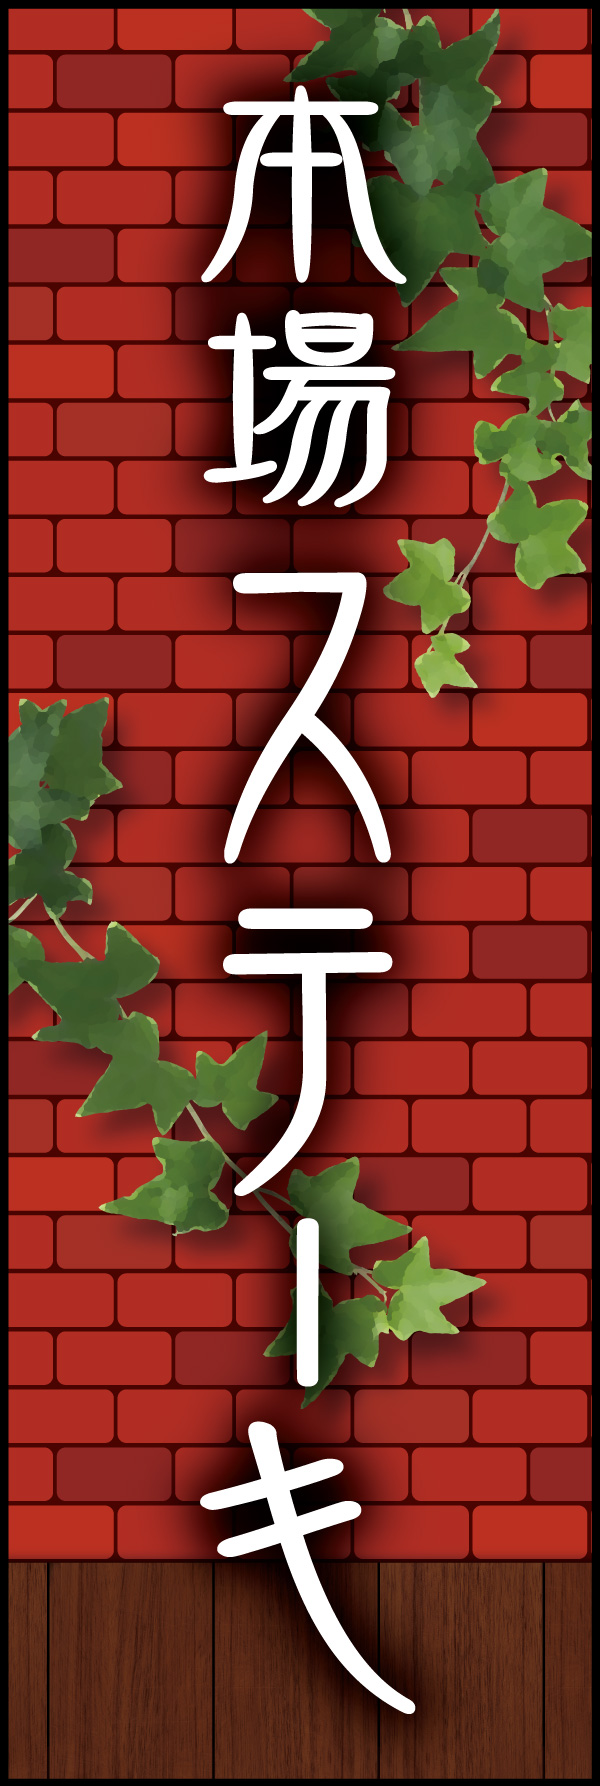 本場ステーキ 04 「本場ステーキ」の幟です。赤煉瓦をバックに、懐かしい洋食屋さんをイメージしてデザインしました。(Y.M)